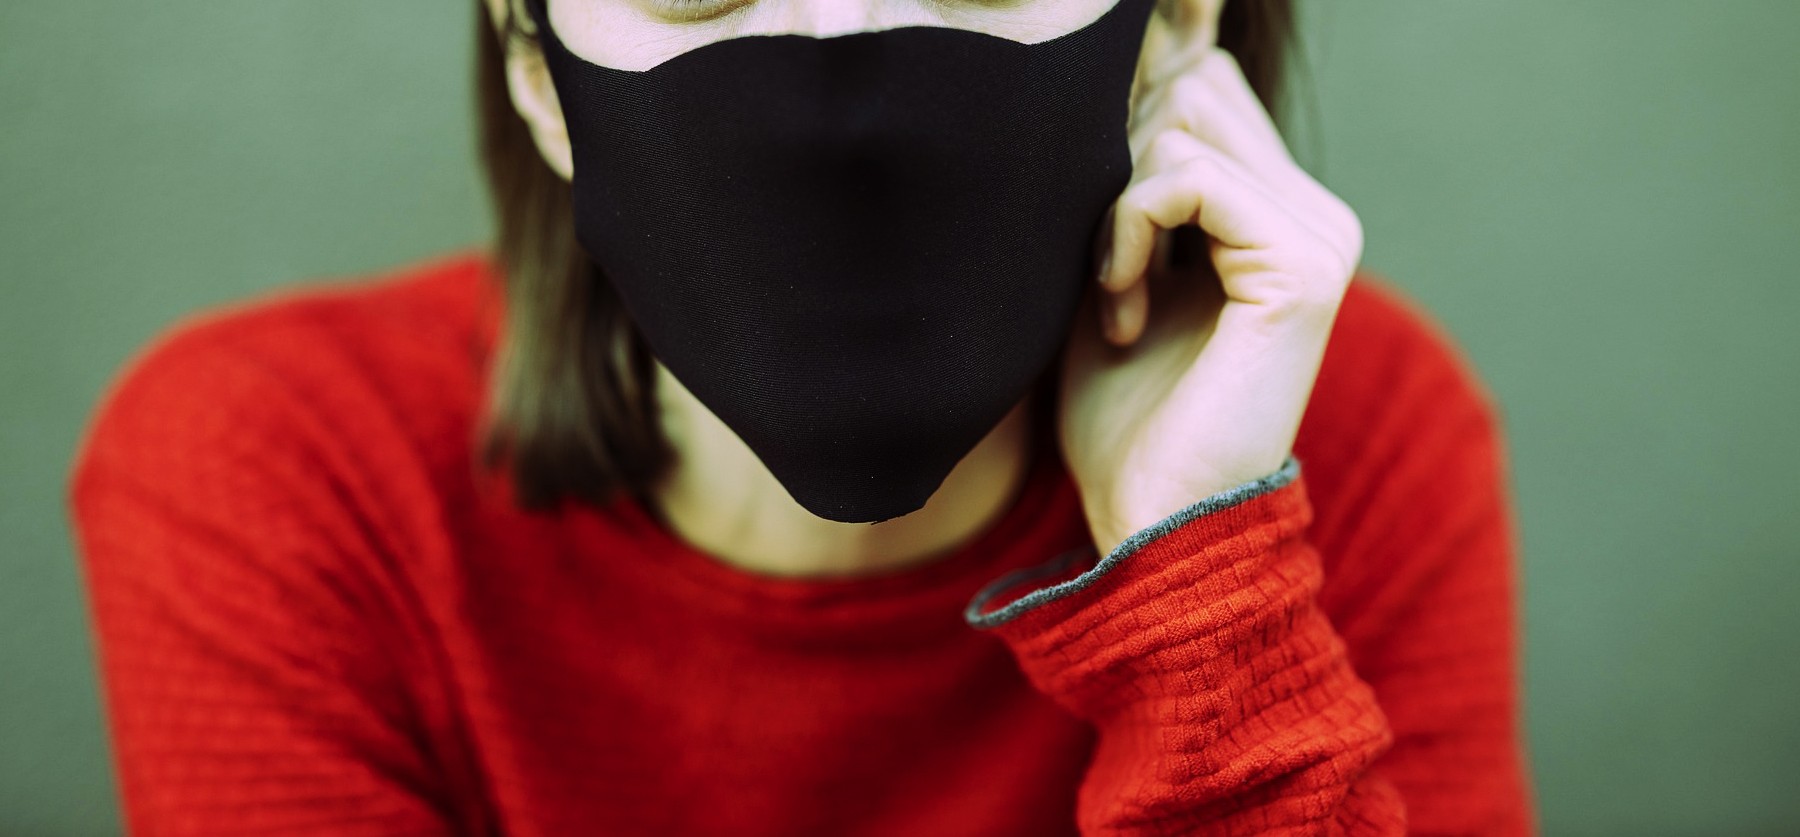 8 stk cpr maske engangs reise praktisk gjenopplivi – Vicedeal